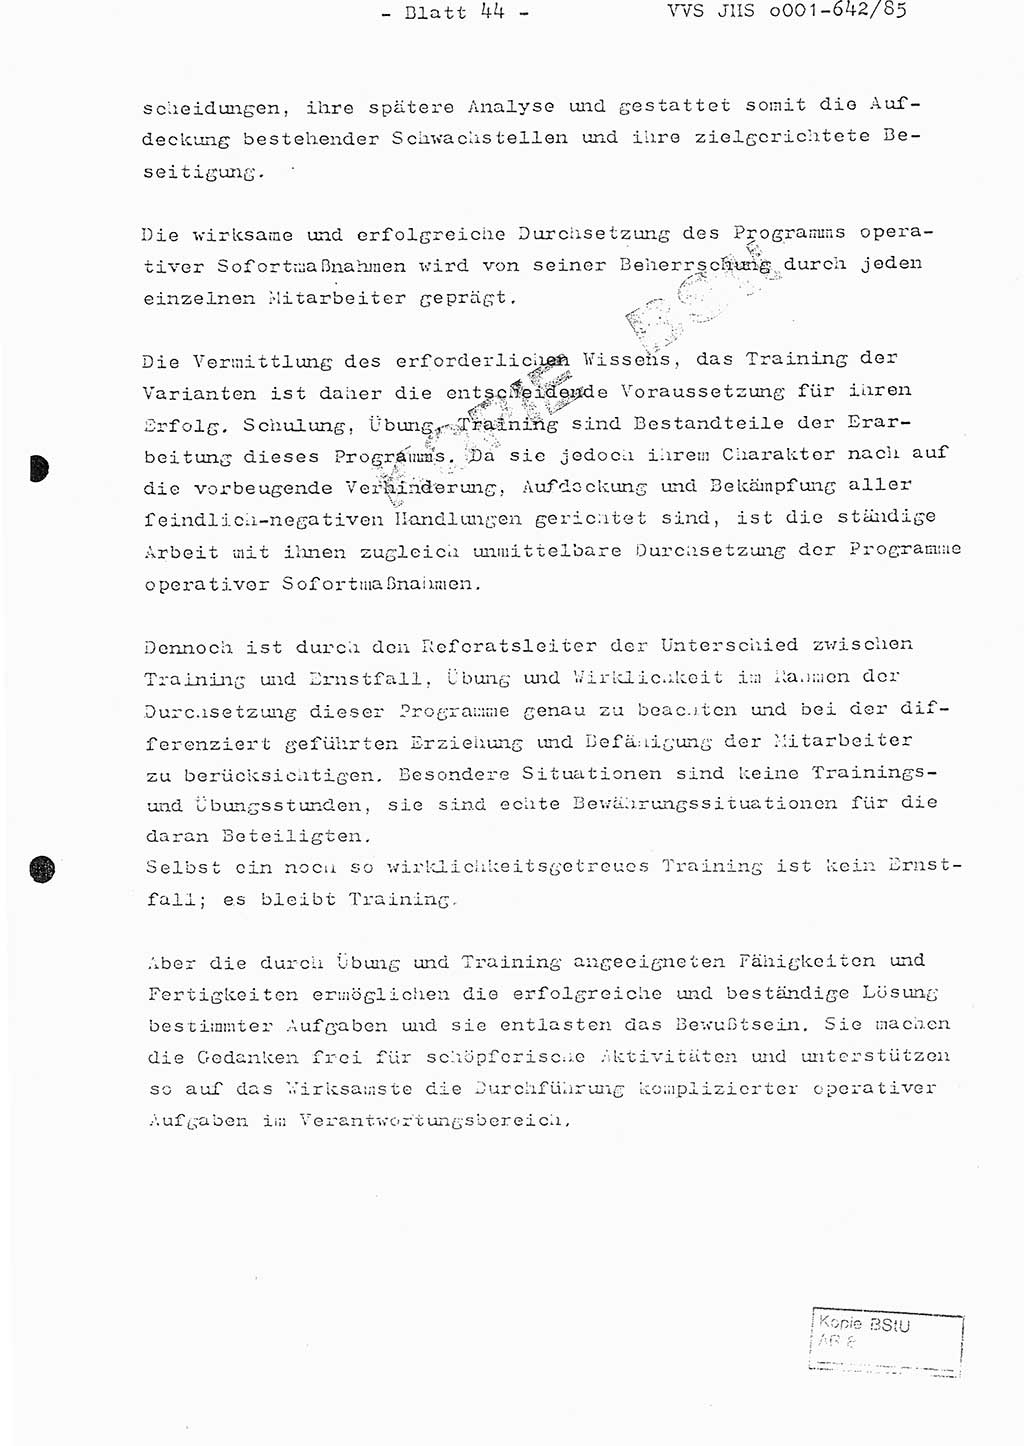 Fachschulabschlußarbeit Oberleutnant Lothar Fahland (Abt. ⅩⅣ), Ministerium für Staatssicherheit (MfS) [Deutsche Demokratische Republik (DDR)], Juristische Hochschule (JHS), Vertrauliche Verschlußsache (VVS) o001-642/85, Potsdam 1985, Blatt 44 (FS-Abschl.-Arb. MfS DDR JHS VVS o001-642/85 1985, Bl. 44)